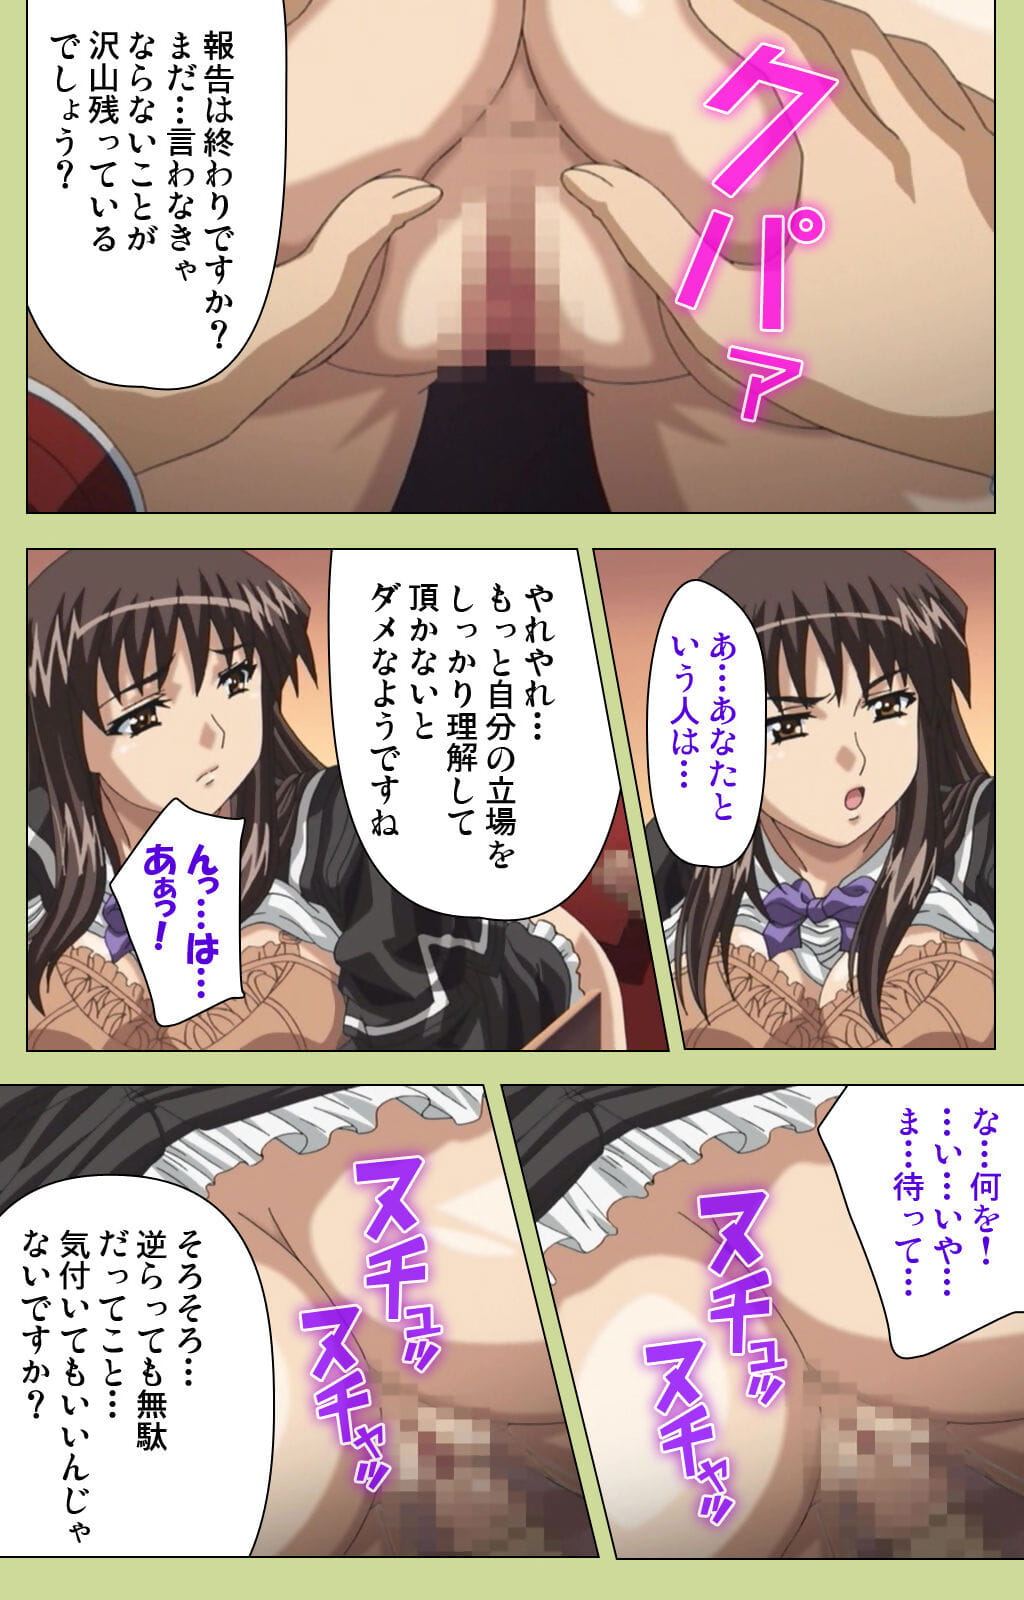 lune :हास्य: पूरा रंग seijin प्रतिबंध समलिंगी स्त्रियां gakuen विशेष पूरा प्रतिबंध हिस्सा 5